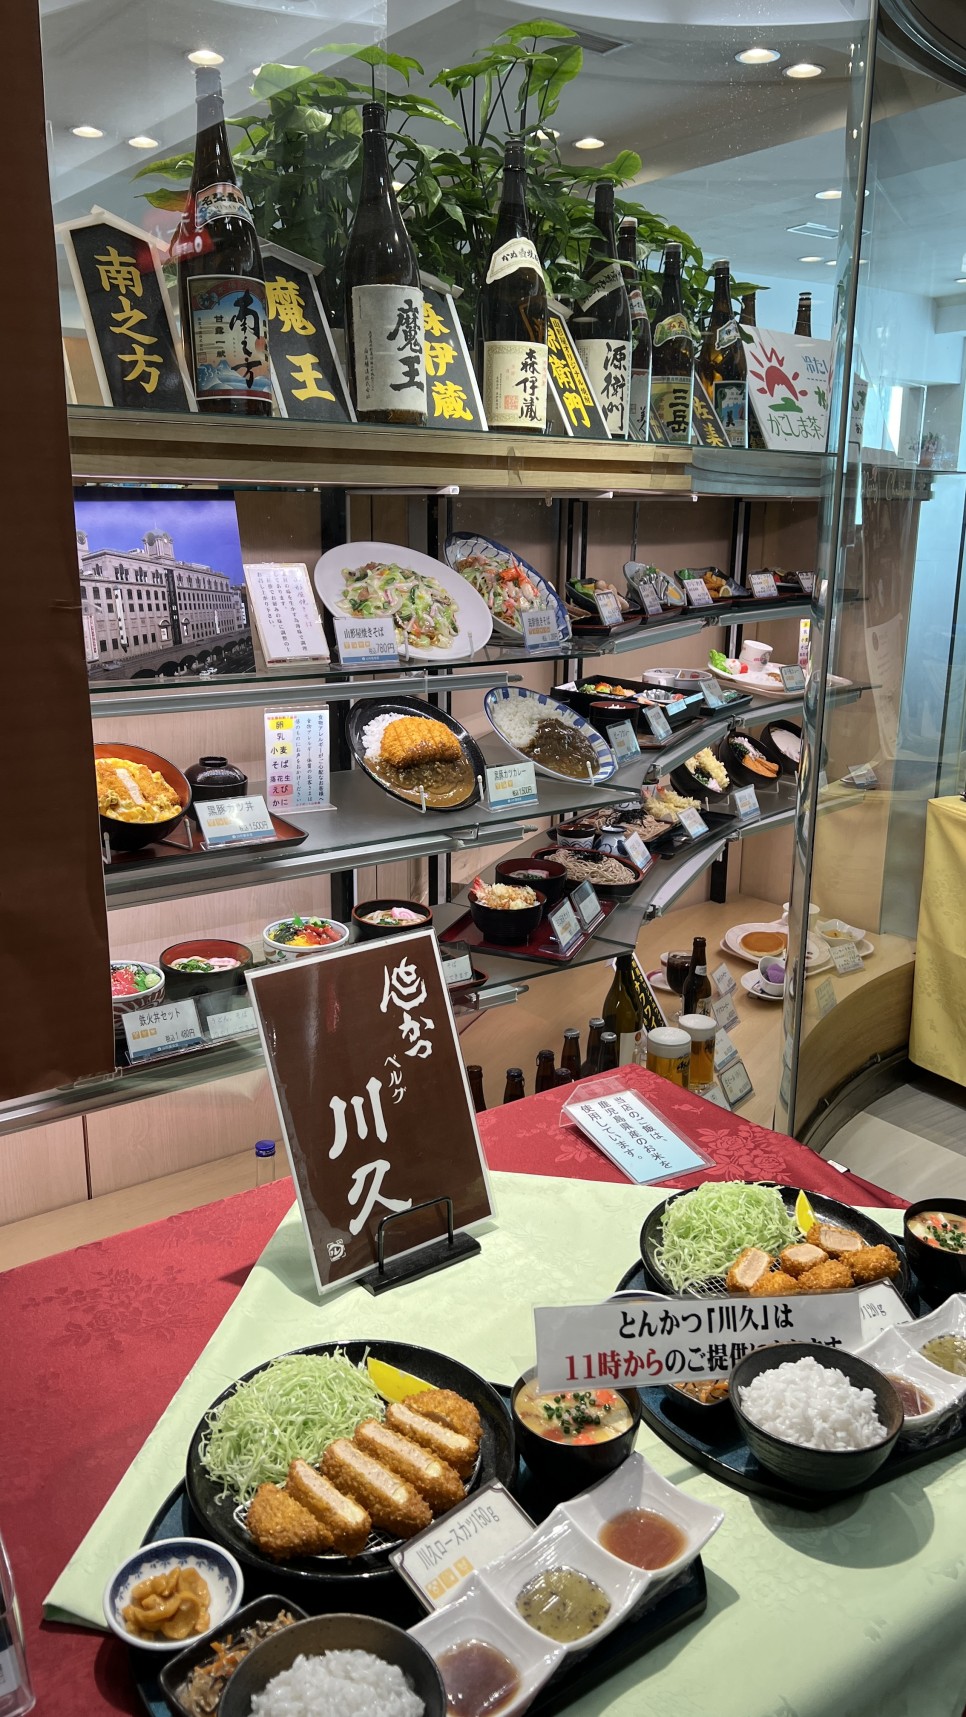 가고시마 항공권 날씨 대한항공 직항노선 공항 면세점 먹거리 후기